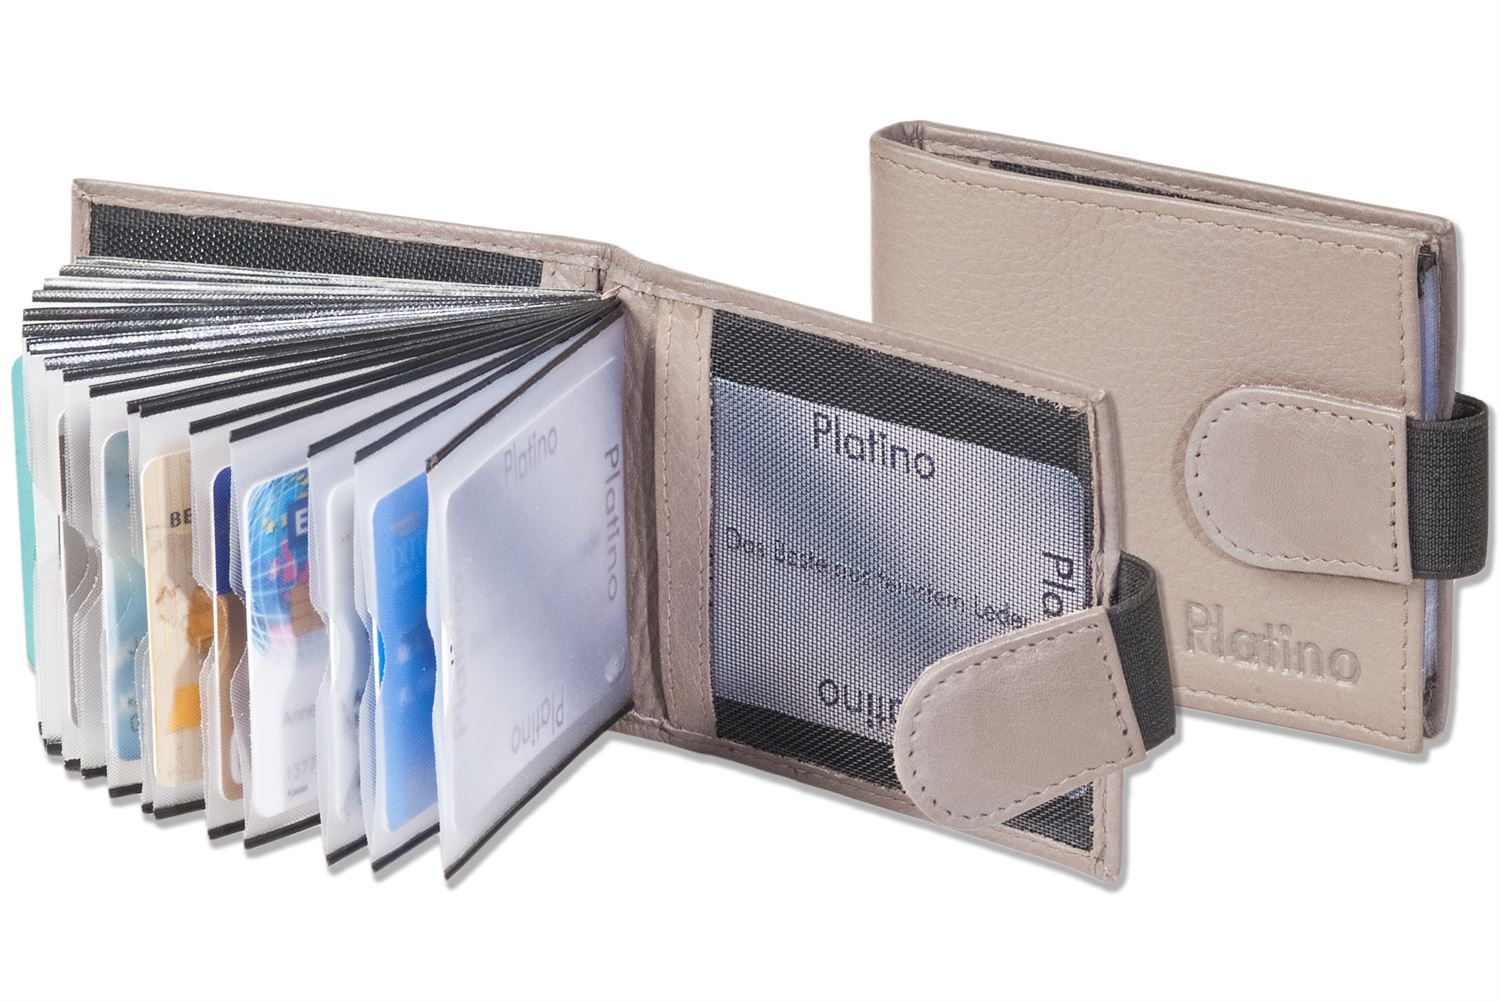 Kreditkartenetui für 20 Kreditkarten oder 40 Visitenkarten aus weichem Platino Braun naturbelassenem Rindsleder in Dunkelbraun/Taupe